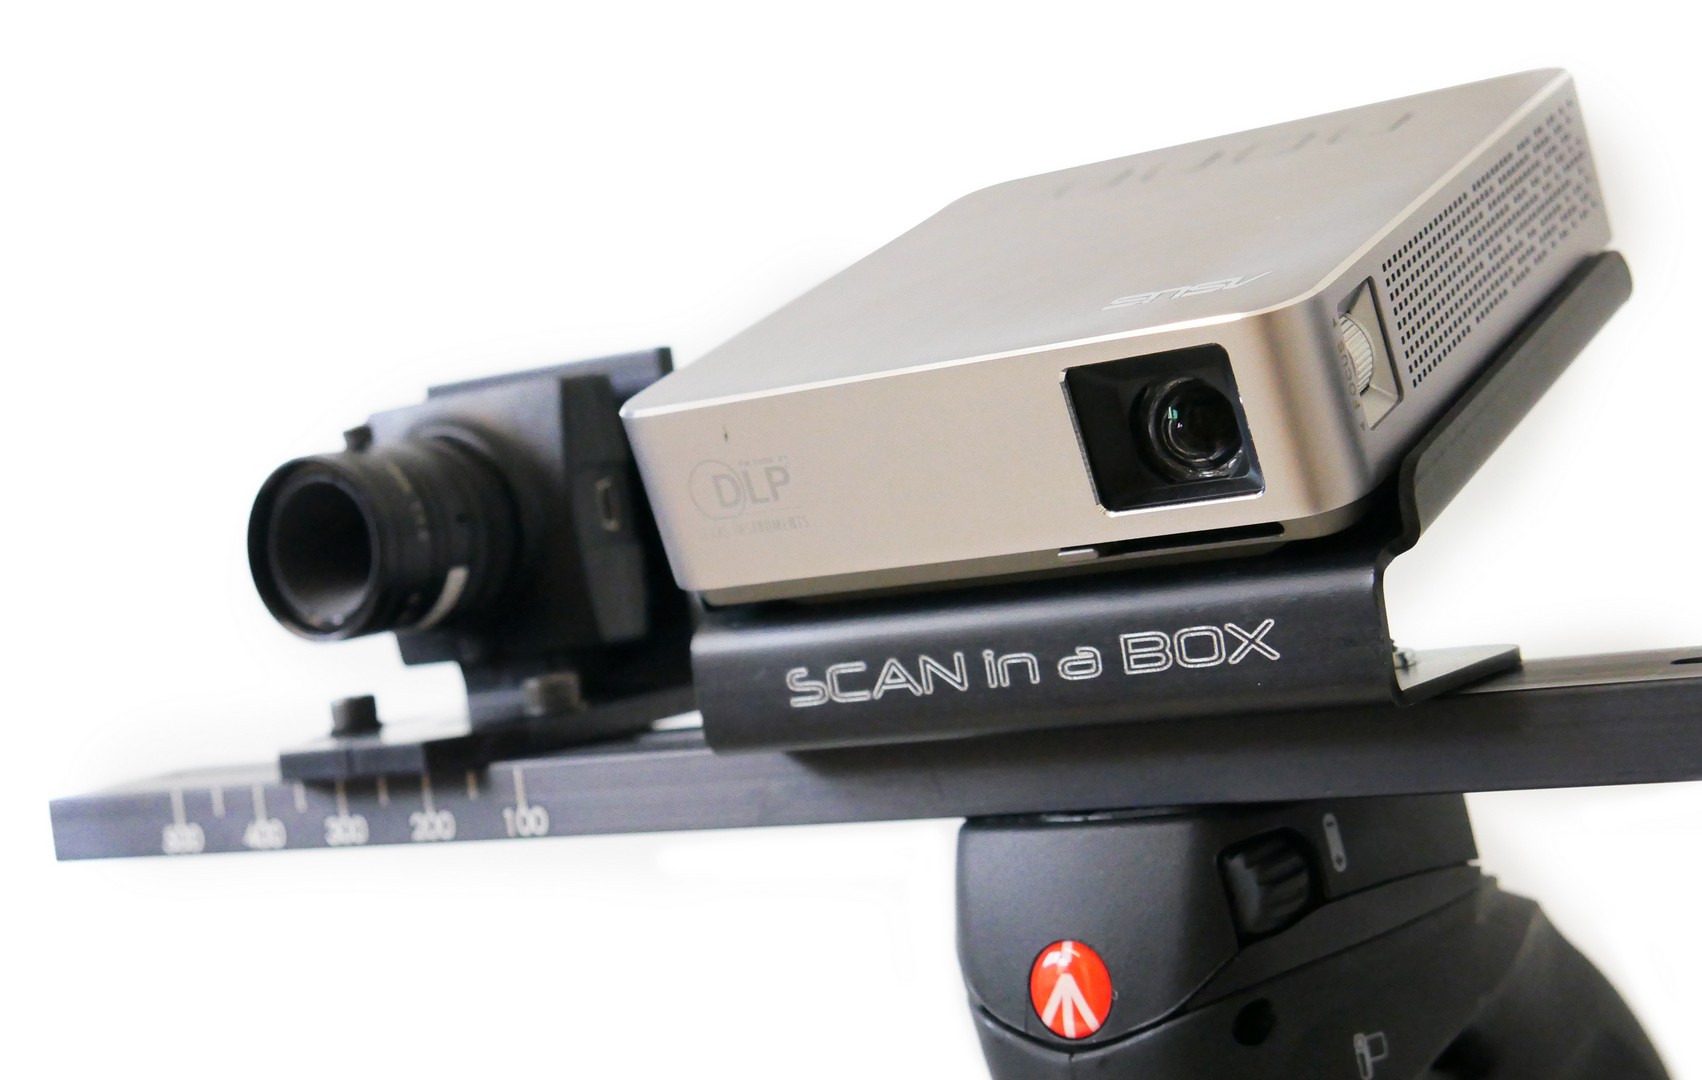 Фото 3D сканер Open Technologies Scan in a Box